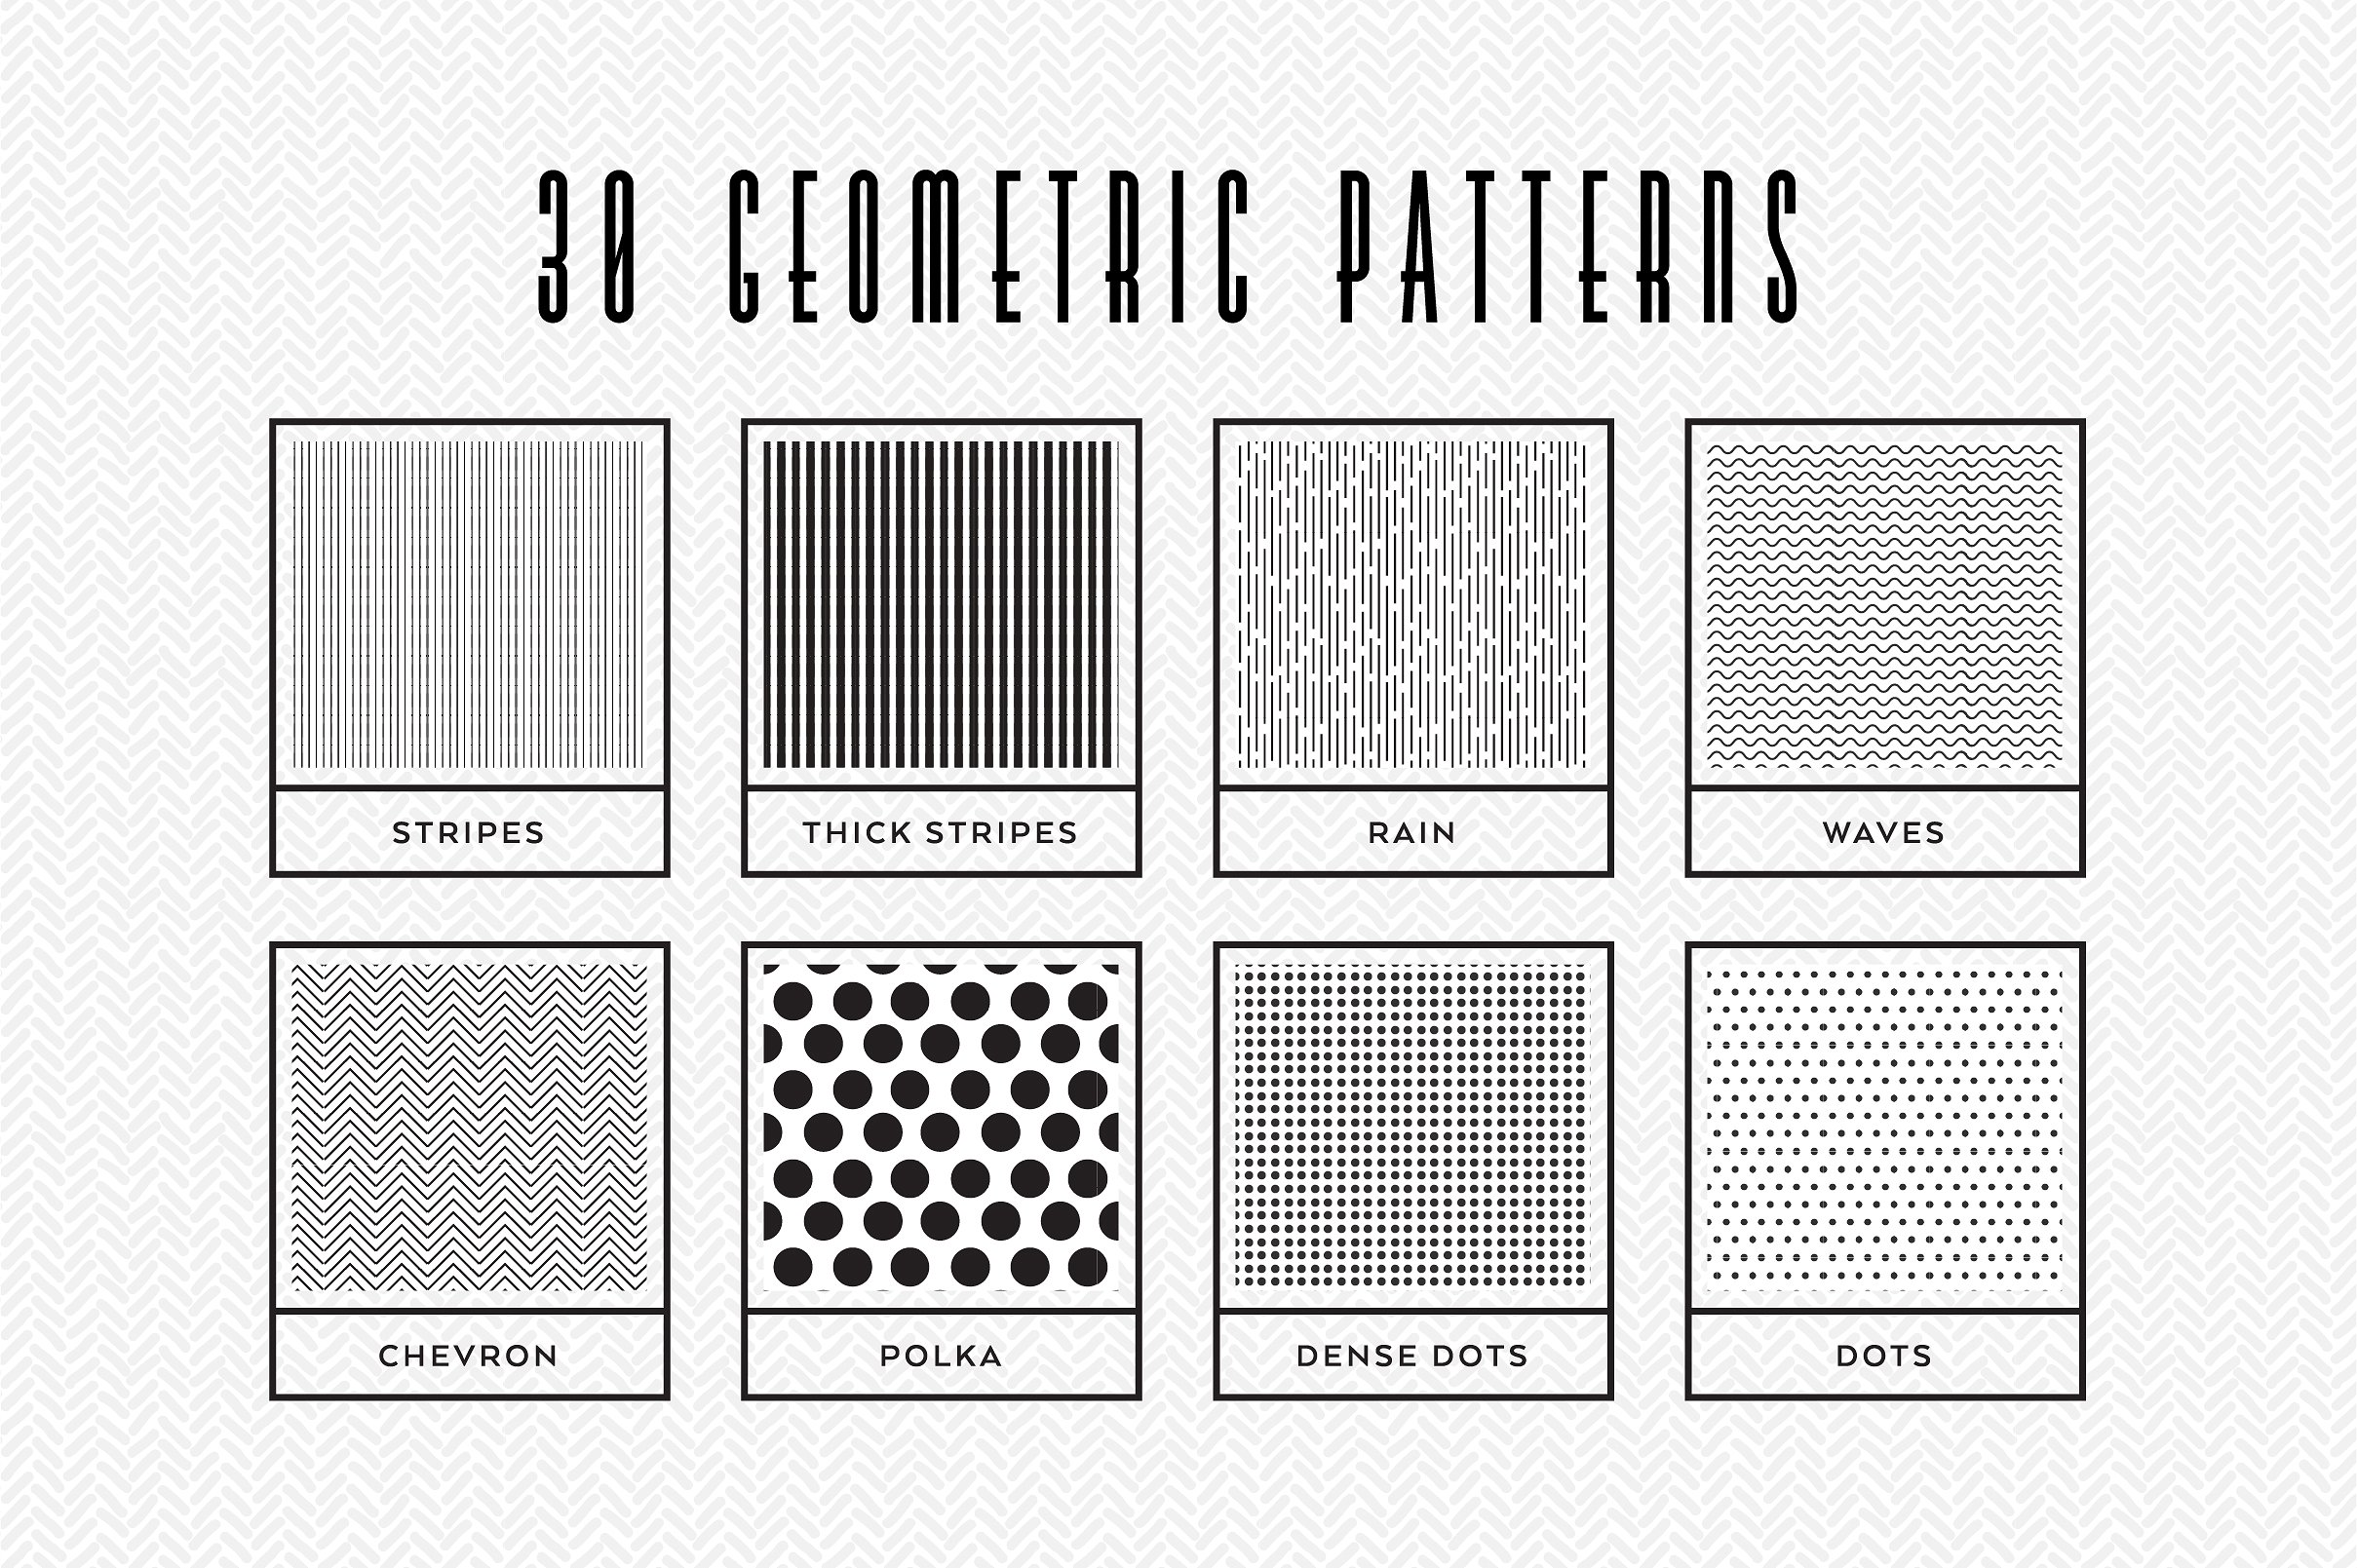 几何图案无缝背景80 Essential Patterns